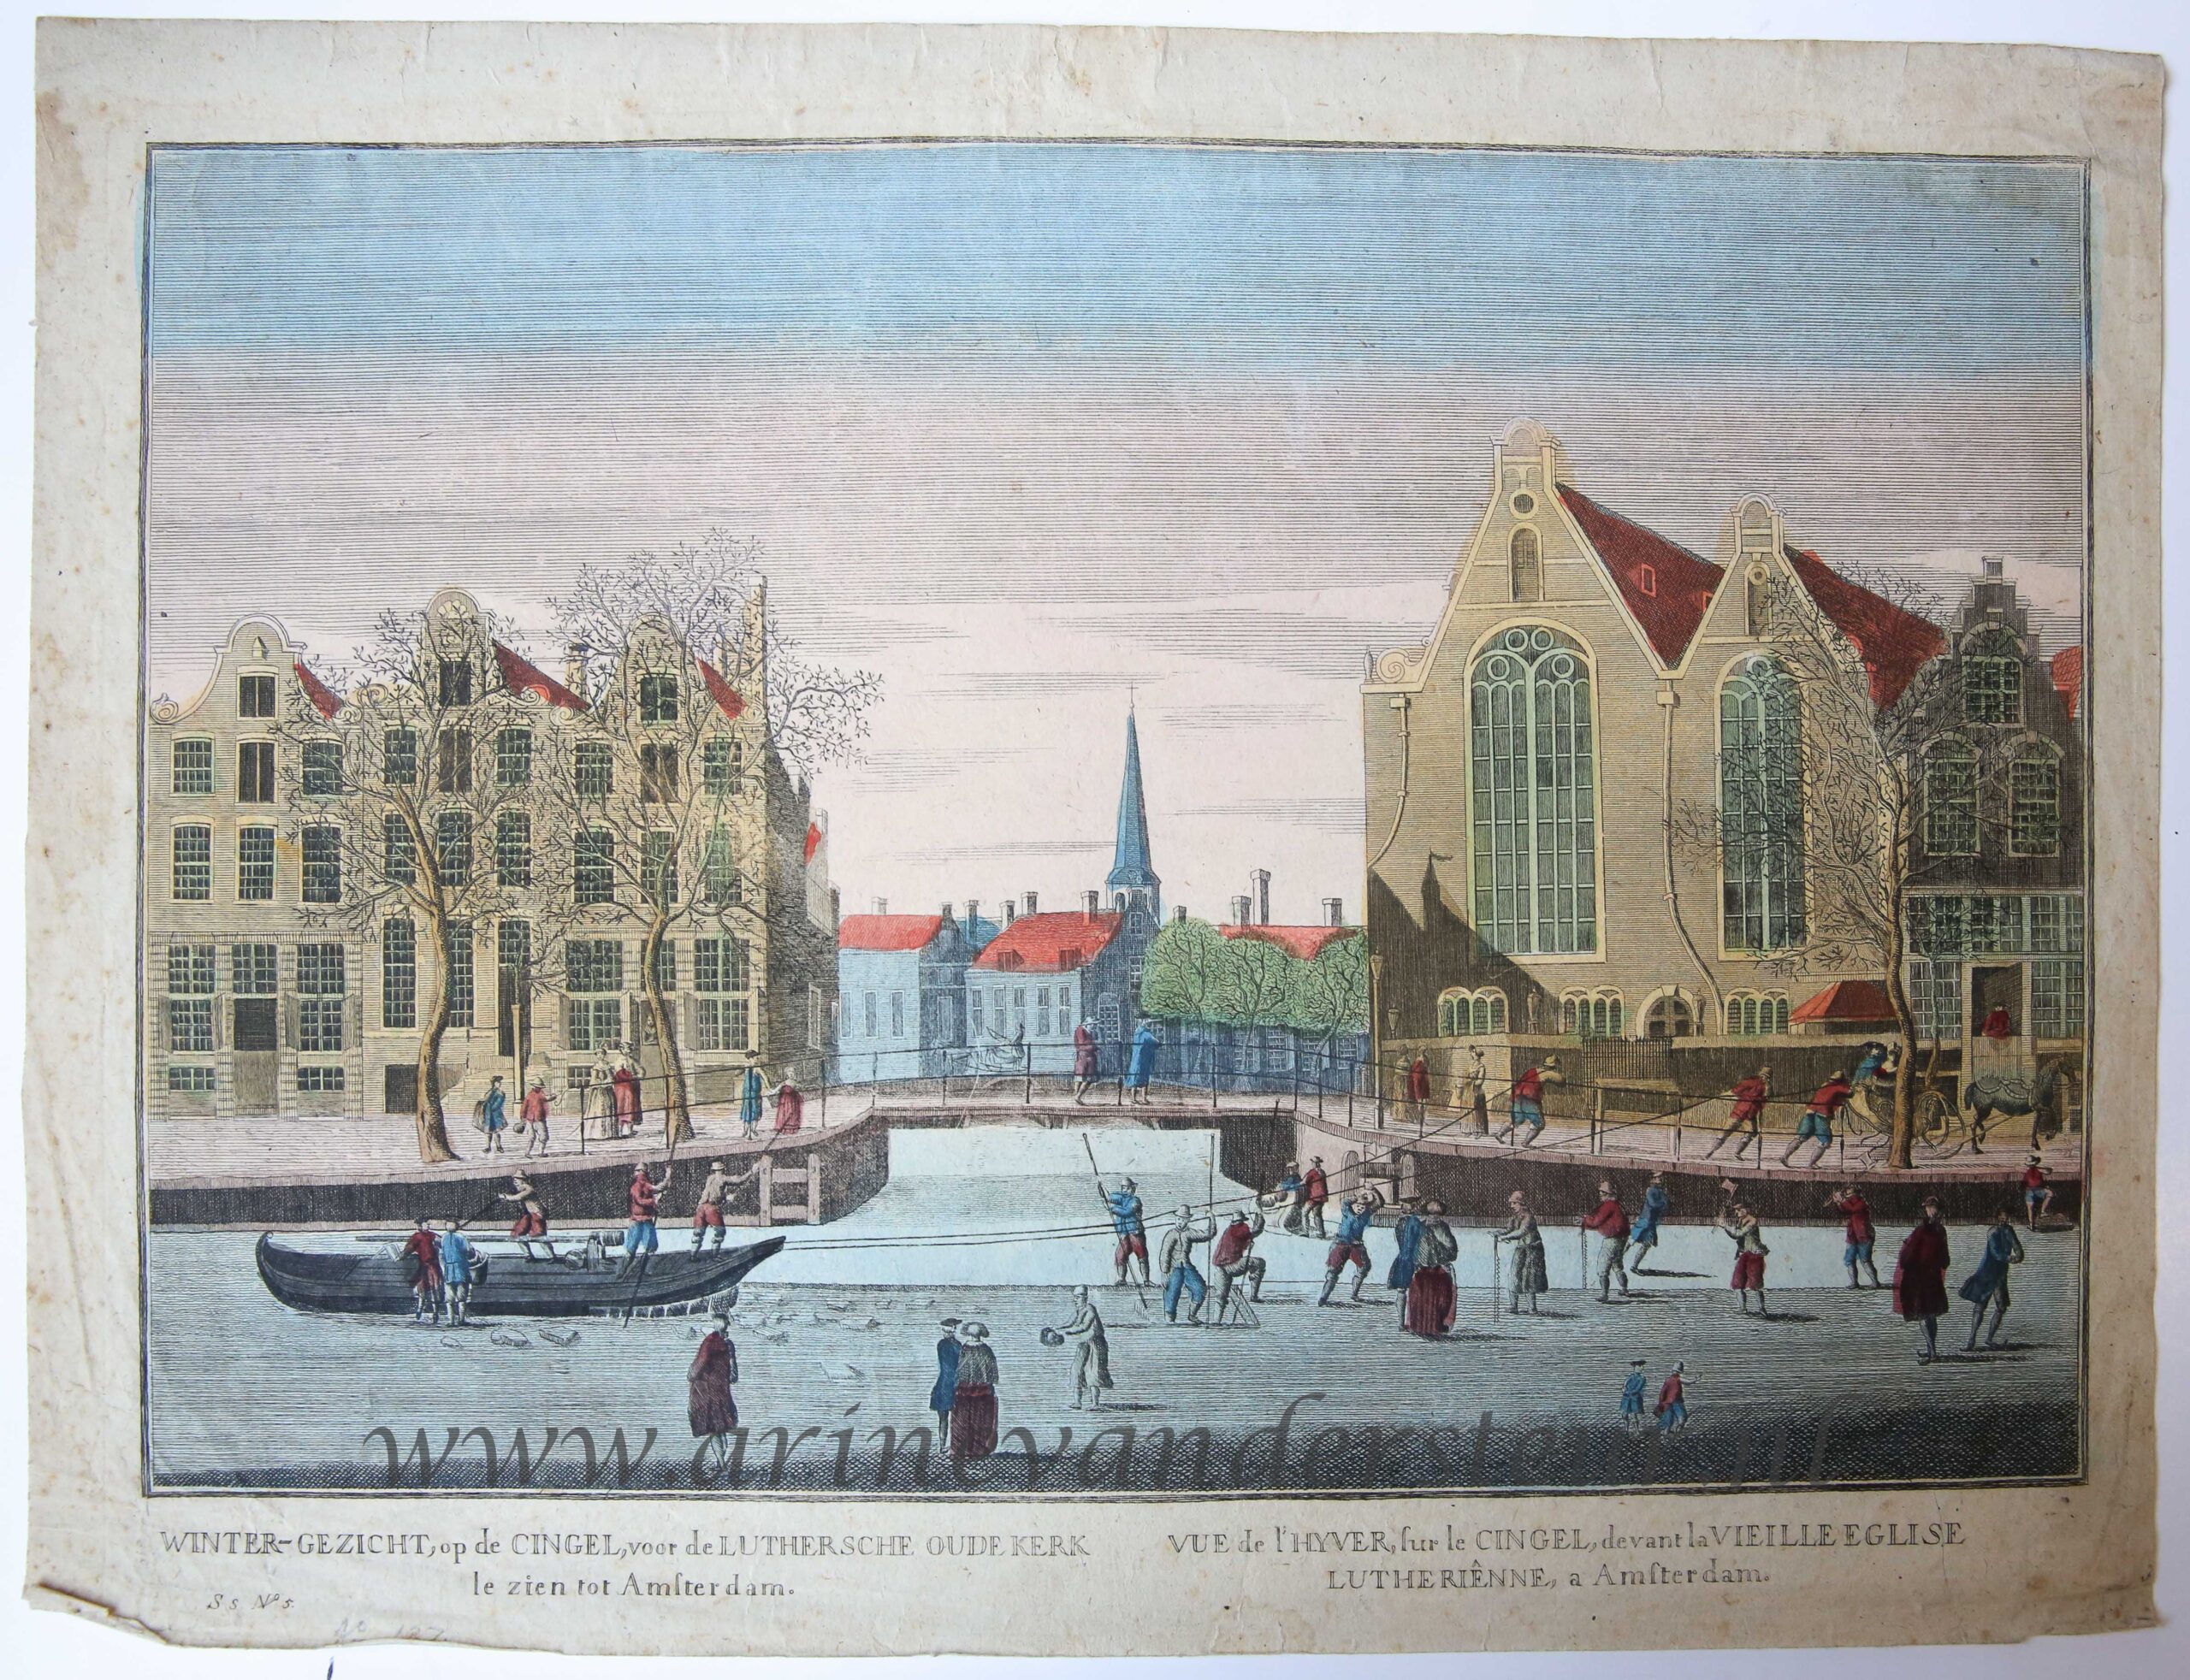 [Optica print, handcolored etching] Winter-gezicht op de Cingel voor de Luthersche Oudekerk te zien tot Amsterdam, published ca. 1790.